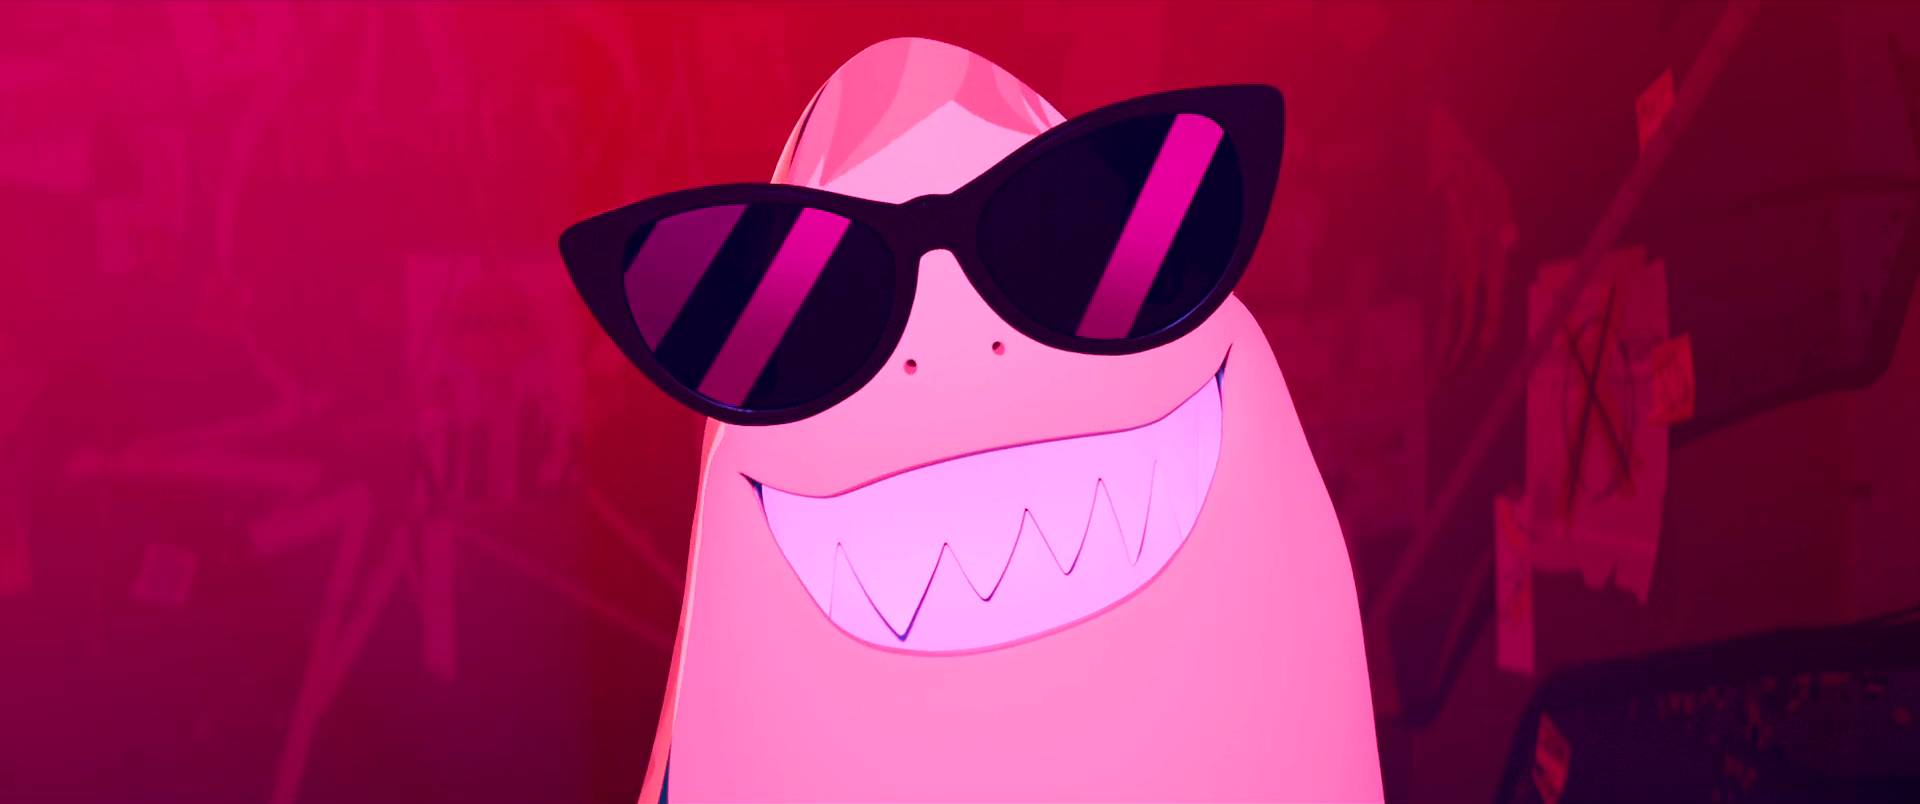 Animated Movie Cartoon Nimona Glasses HUMOR Sunglasses Teeth Film Stills Smiling 1920x804